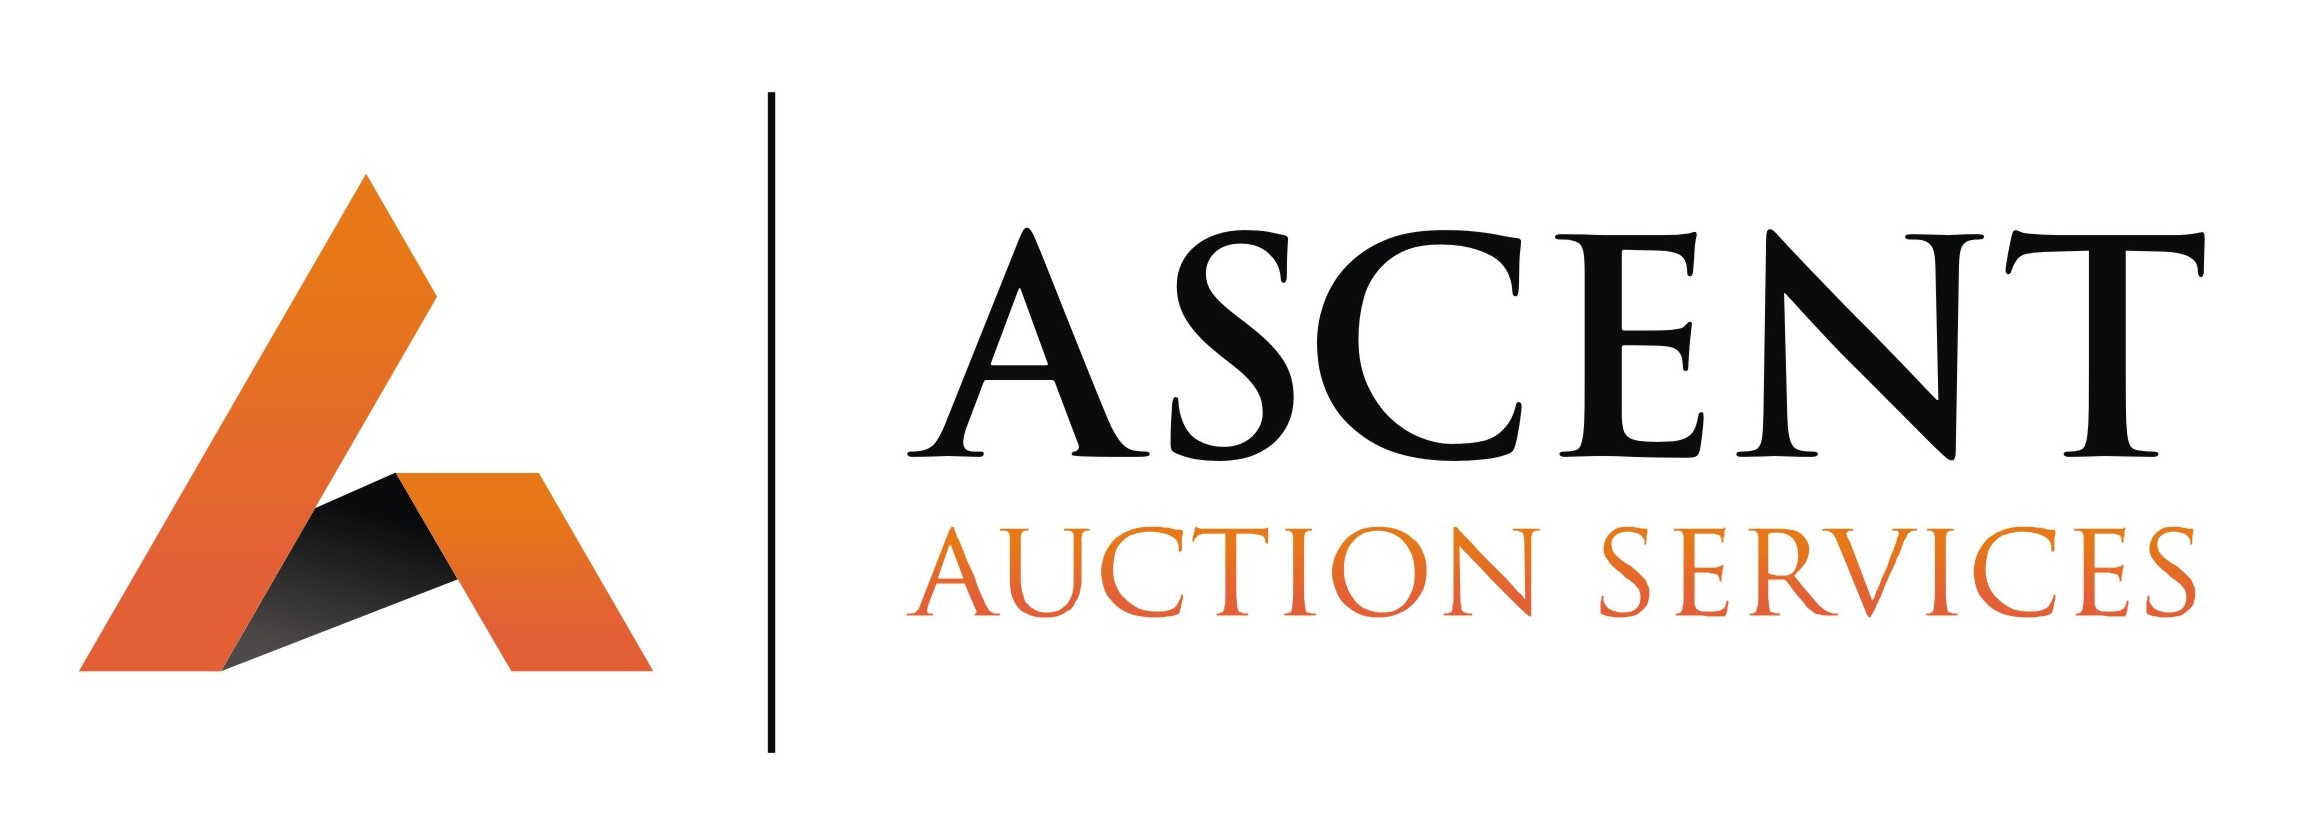 Ascent Auction Services